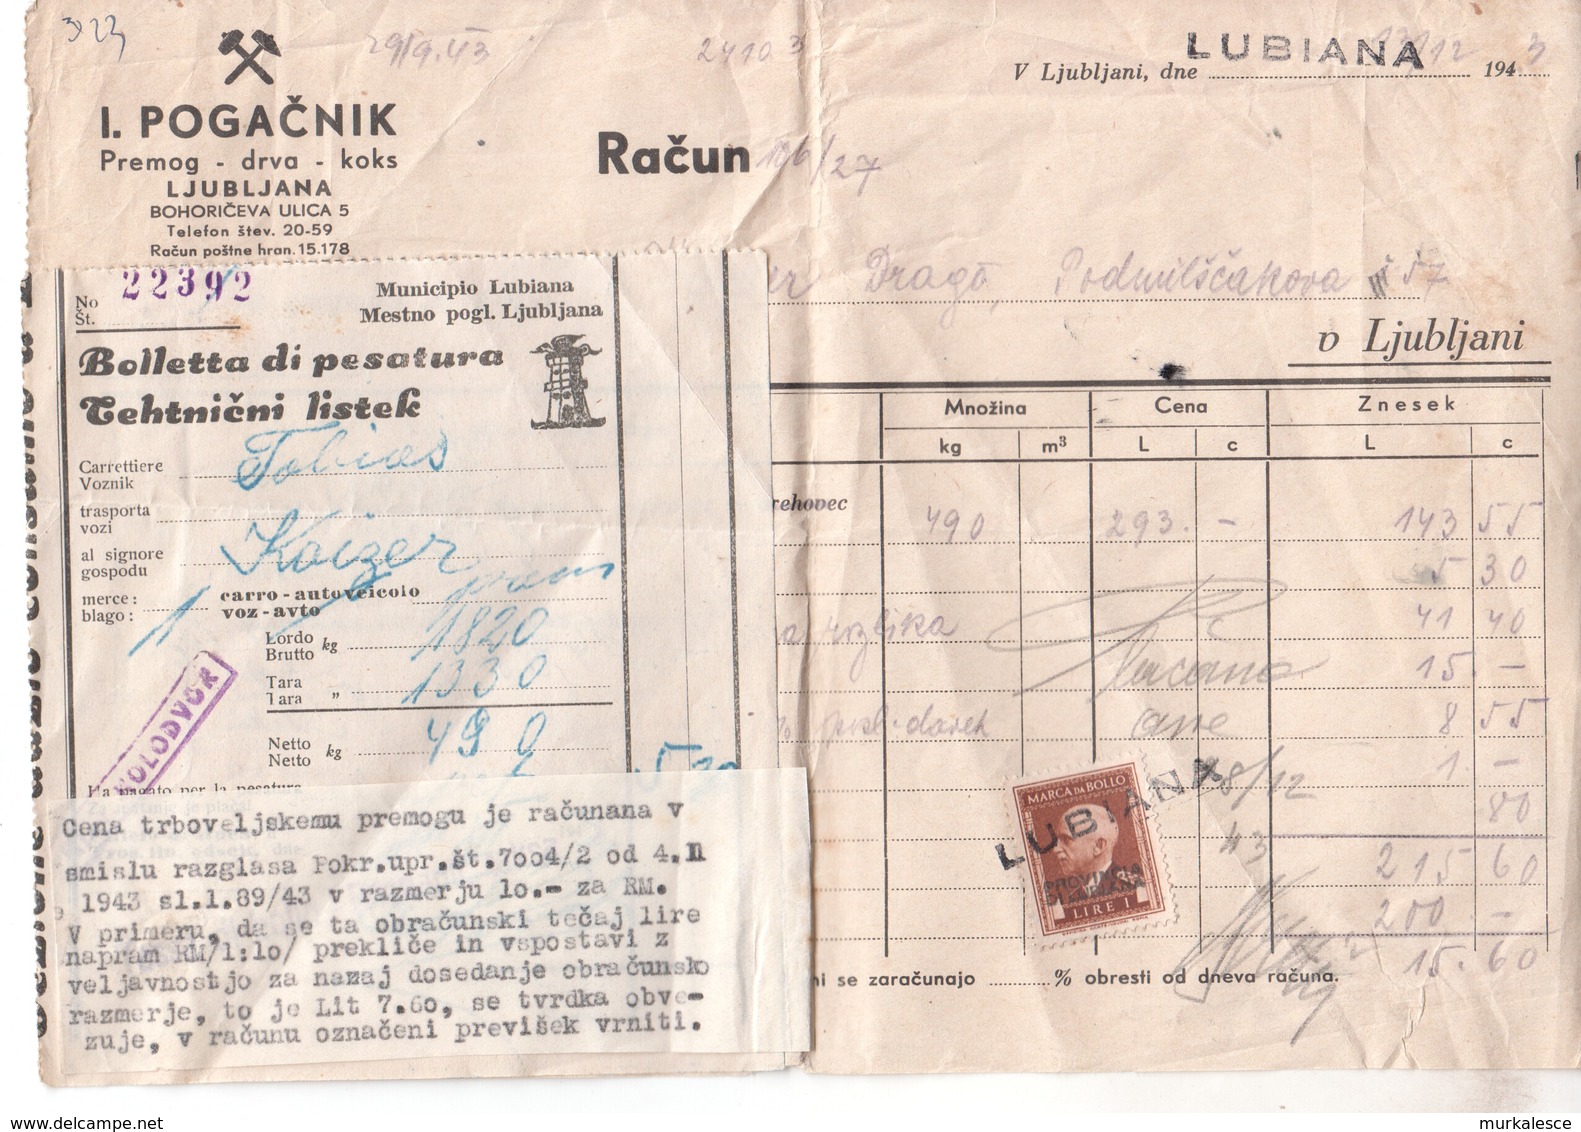 5404  LUBIANA  ITALIEN -DEUTSCH BESETZUNG  LUBIANA   1943 - Occ. Allemande: Lubiana